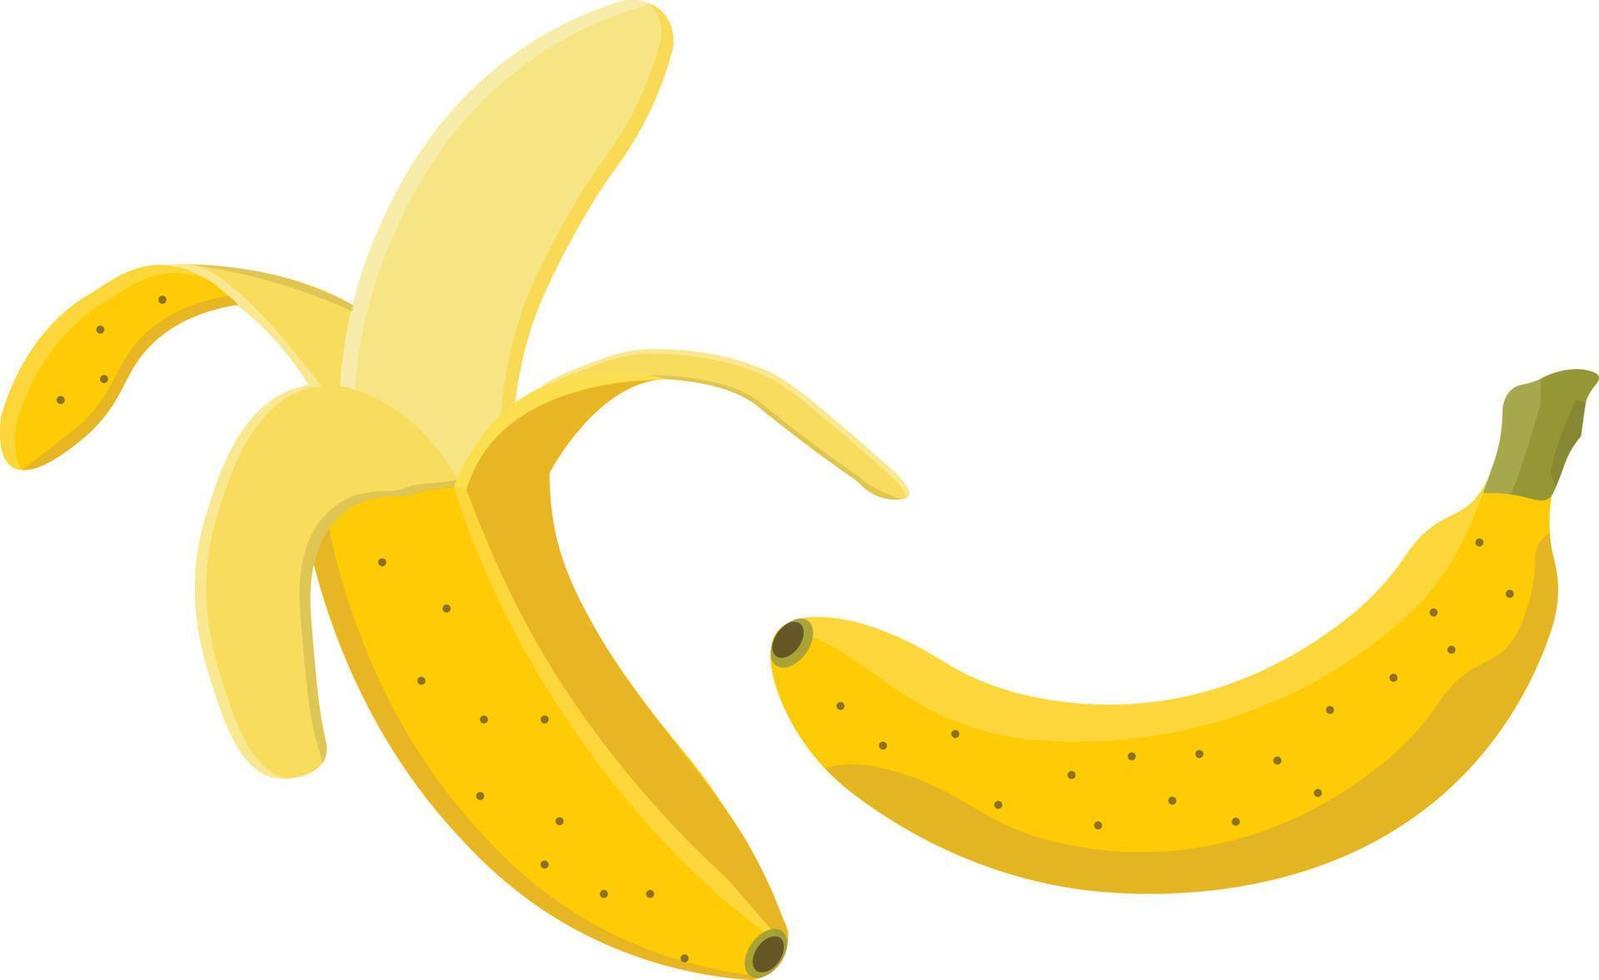 illustration vectorielle de banane vecteur